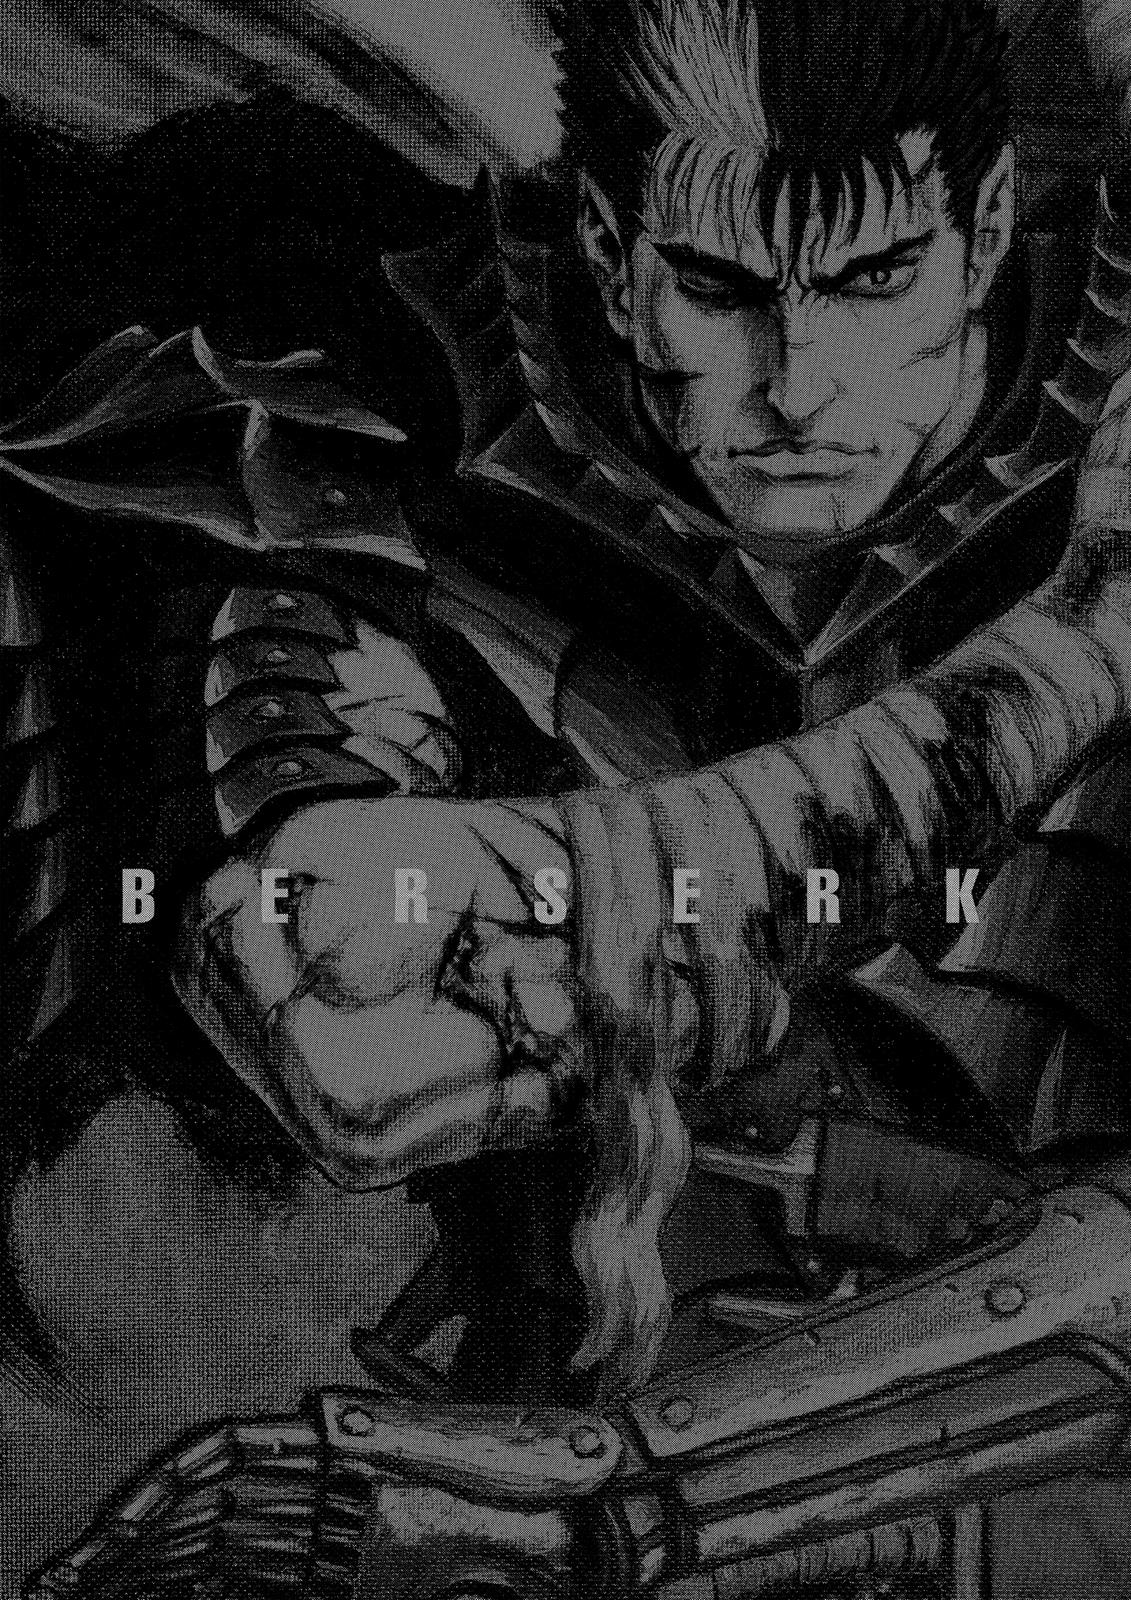 Berserk Manga Chapter 346 image 19